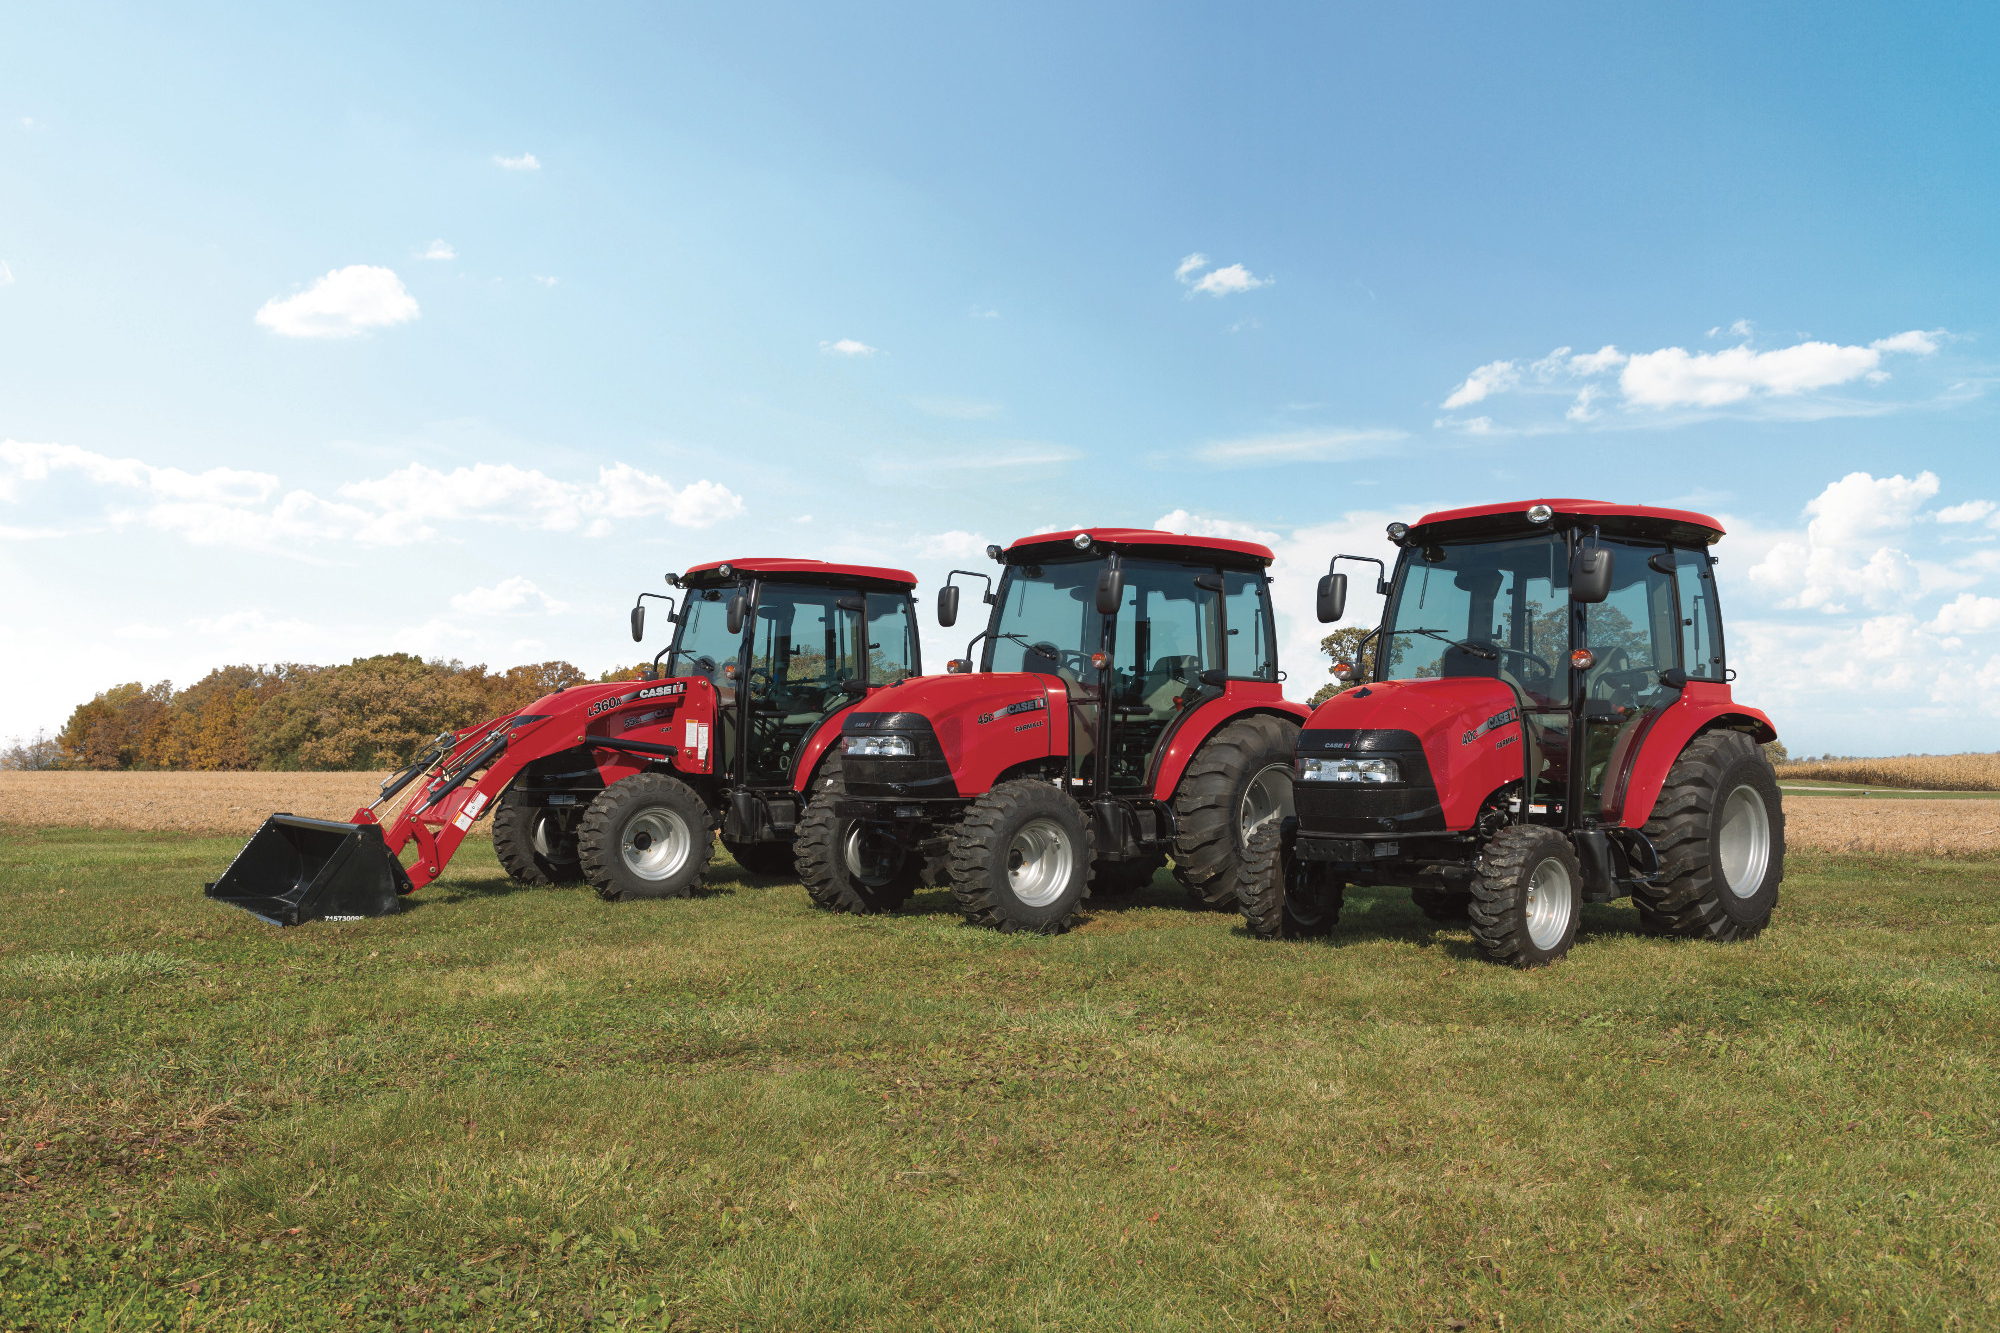 Farmall Series Compact Utility Tractors | Case IH